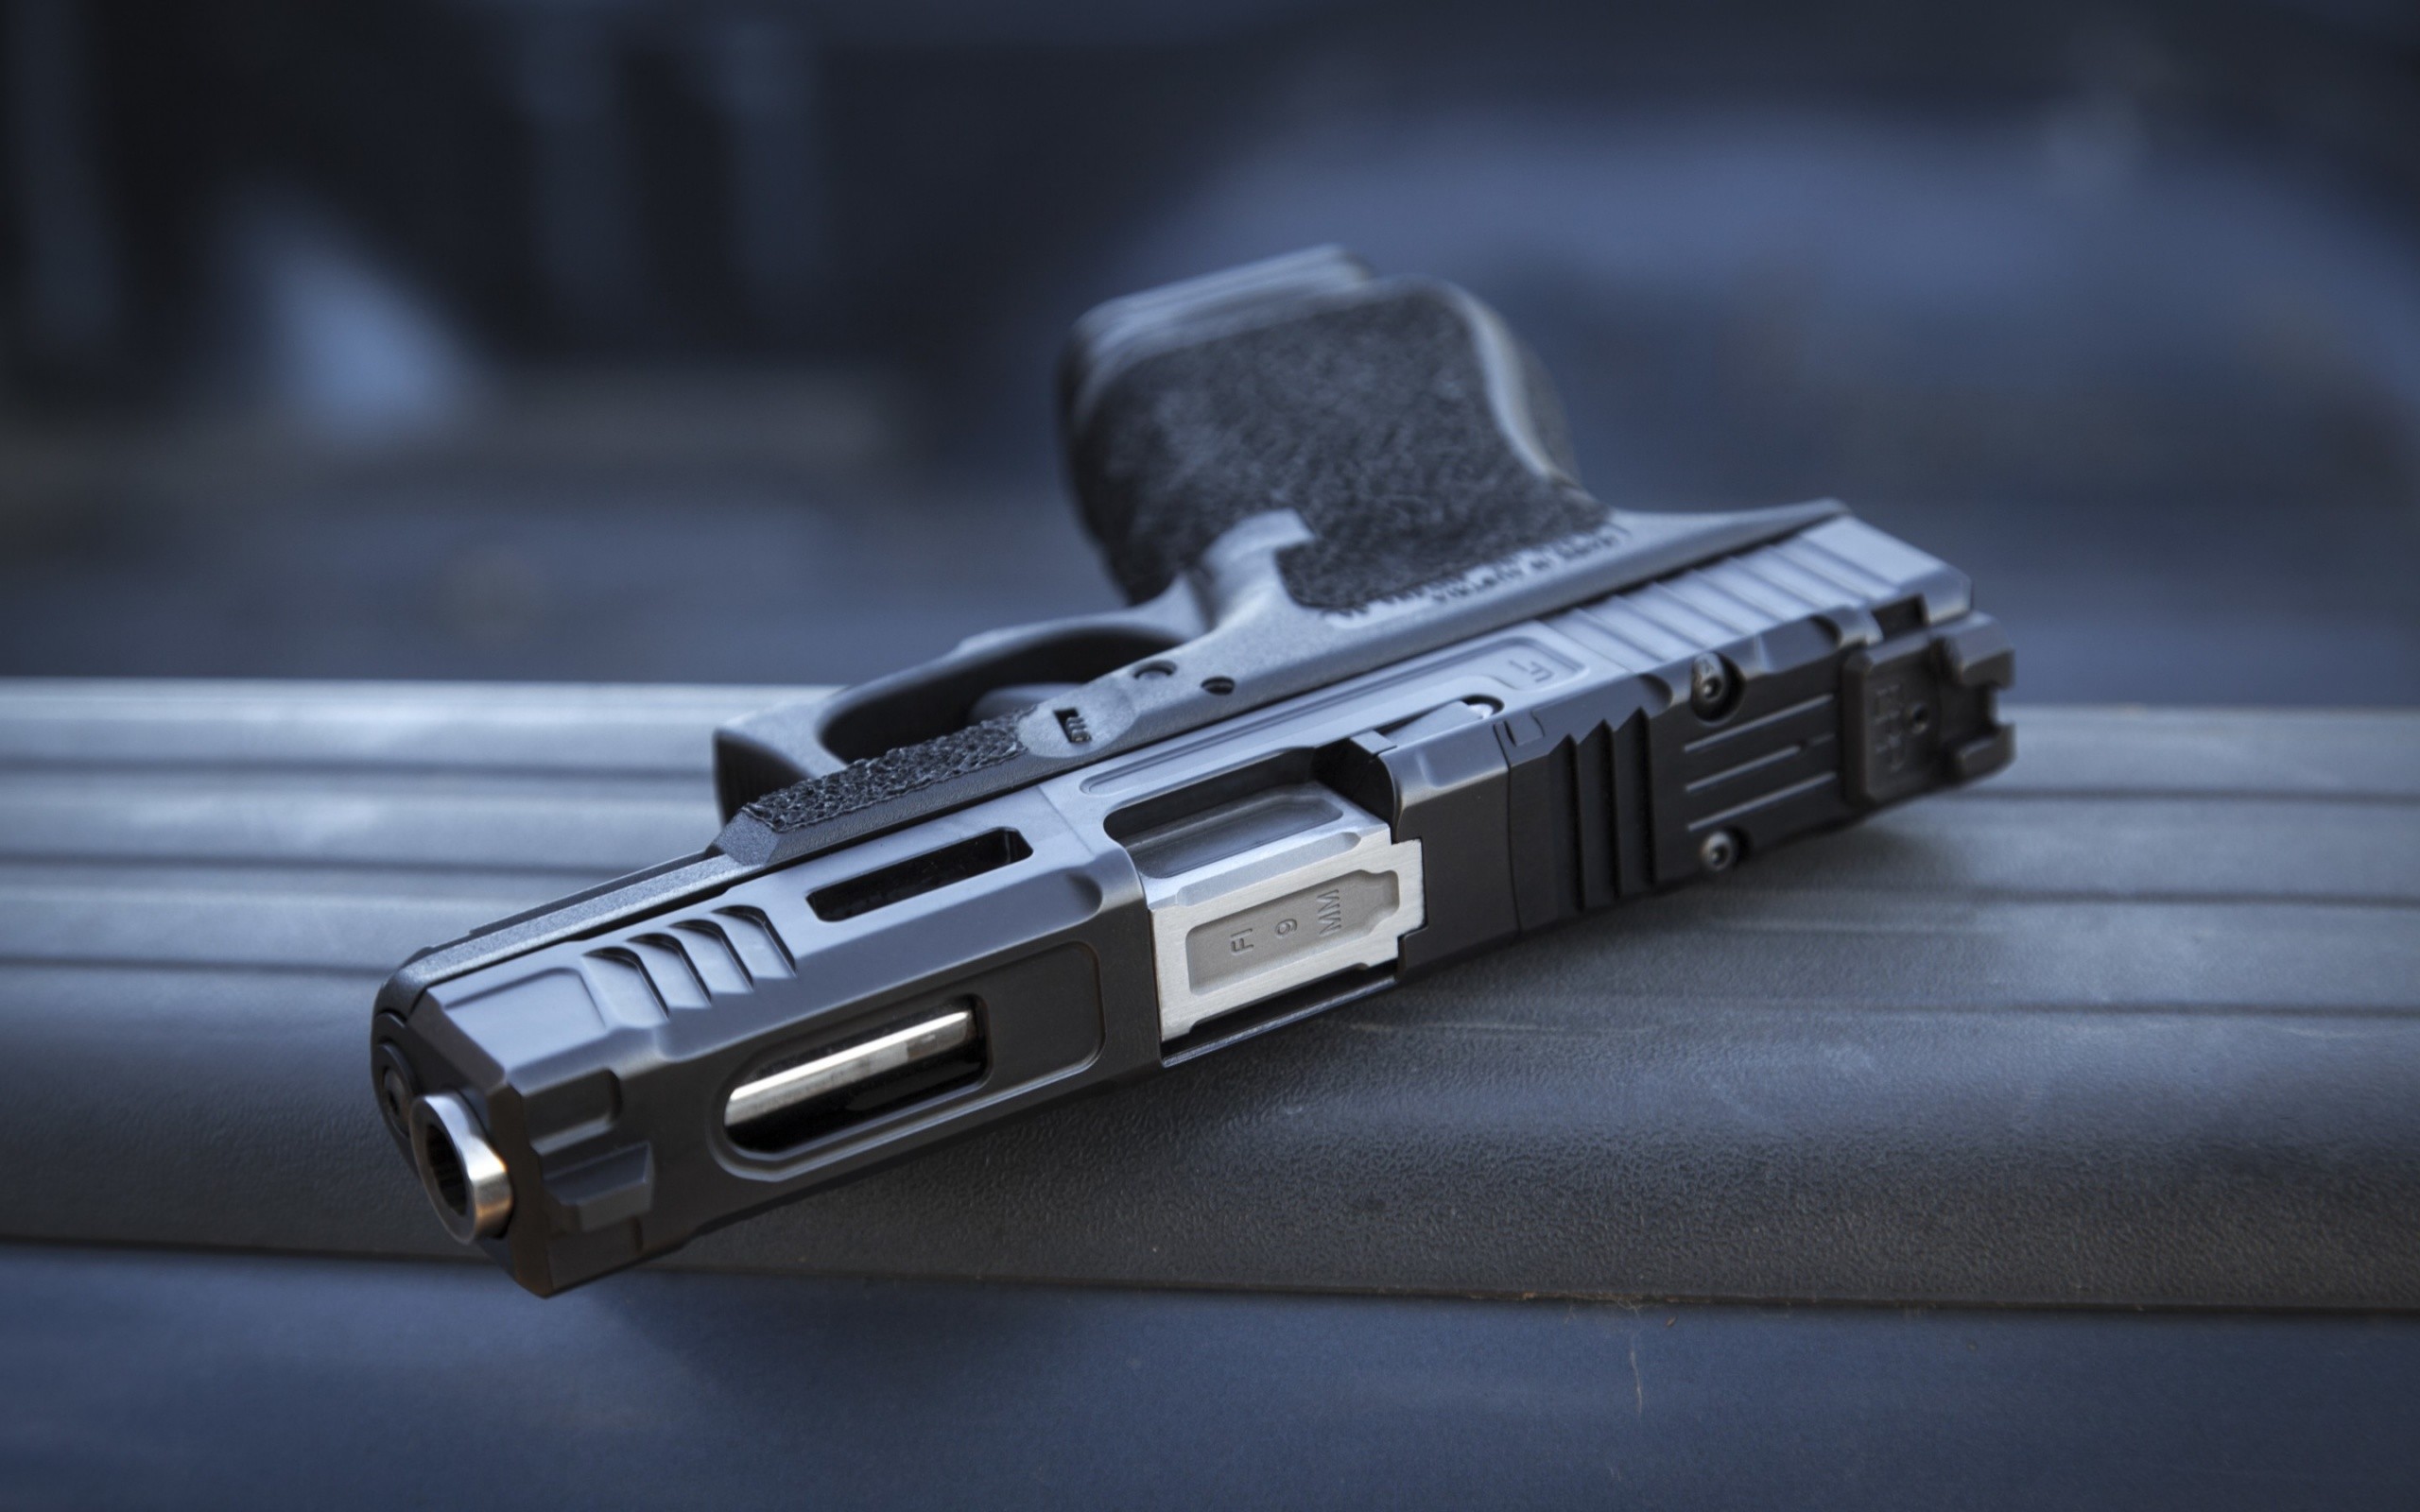 2560x1600 Glock 19 Semi-Automatic Gun